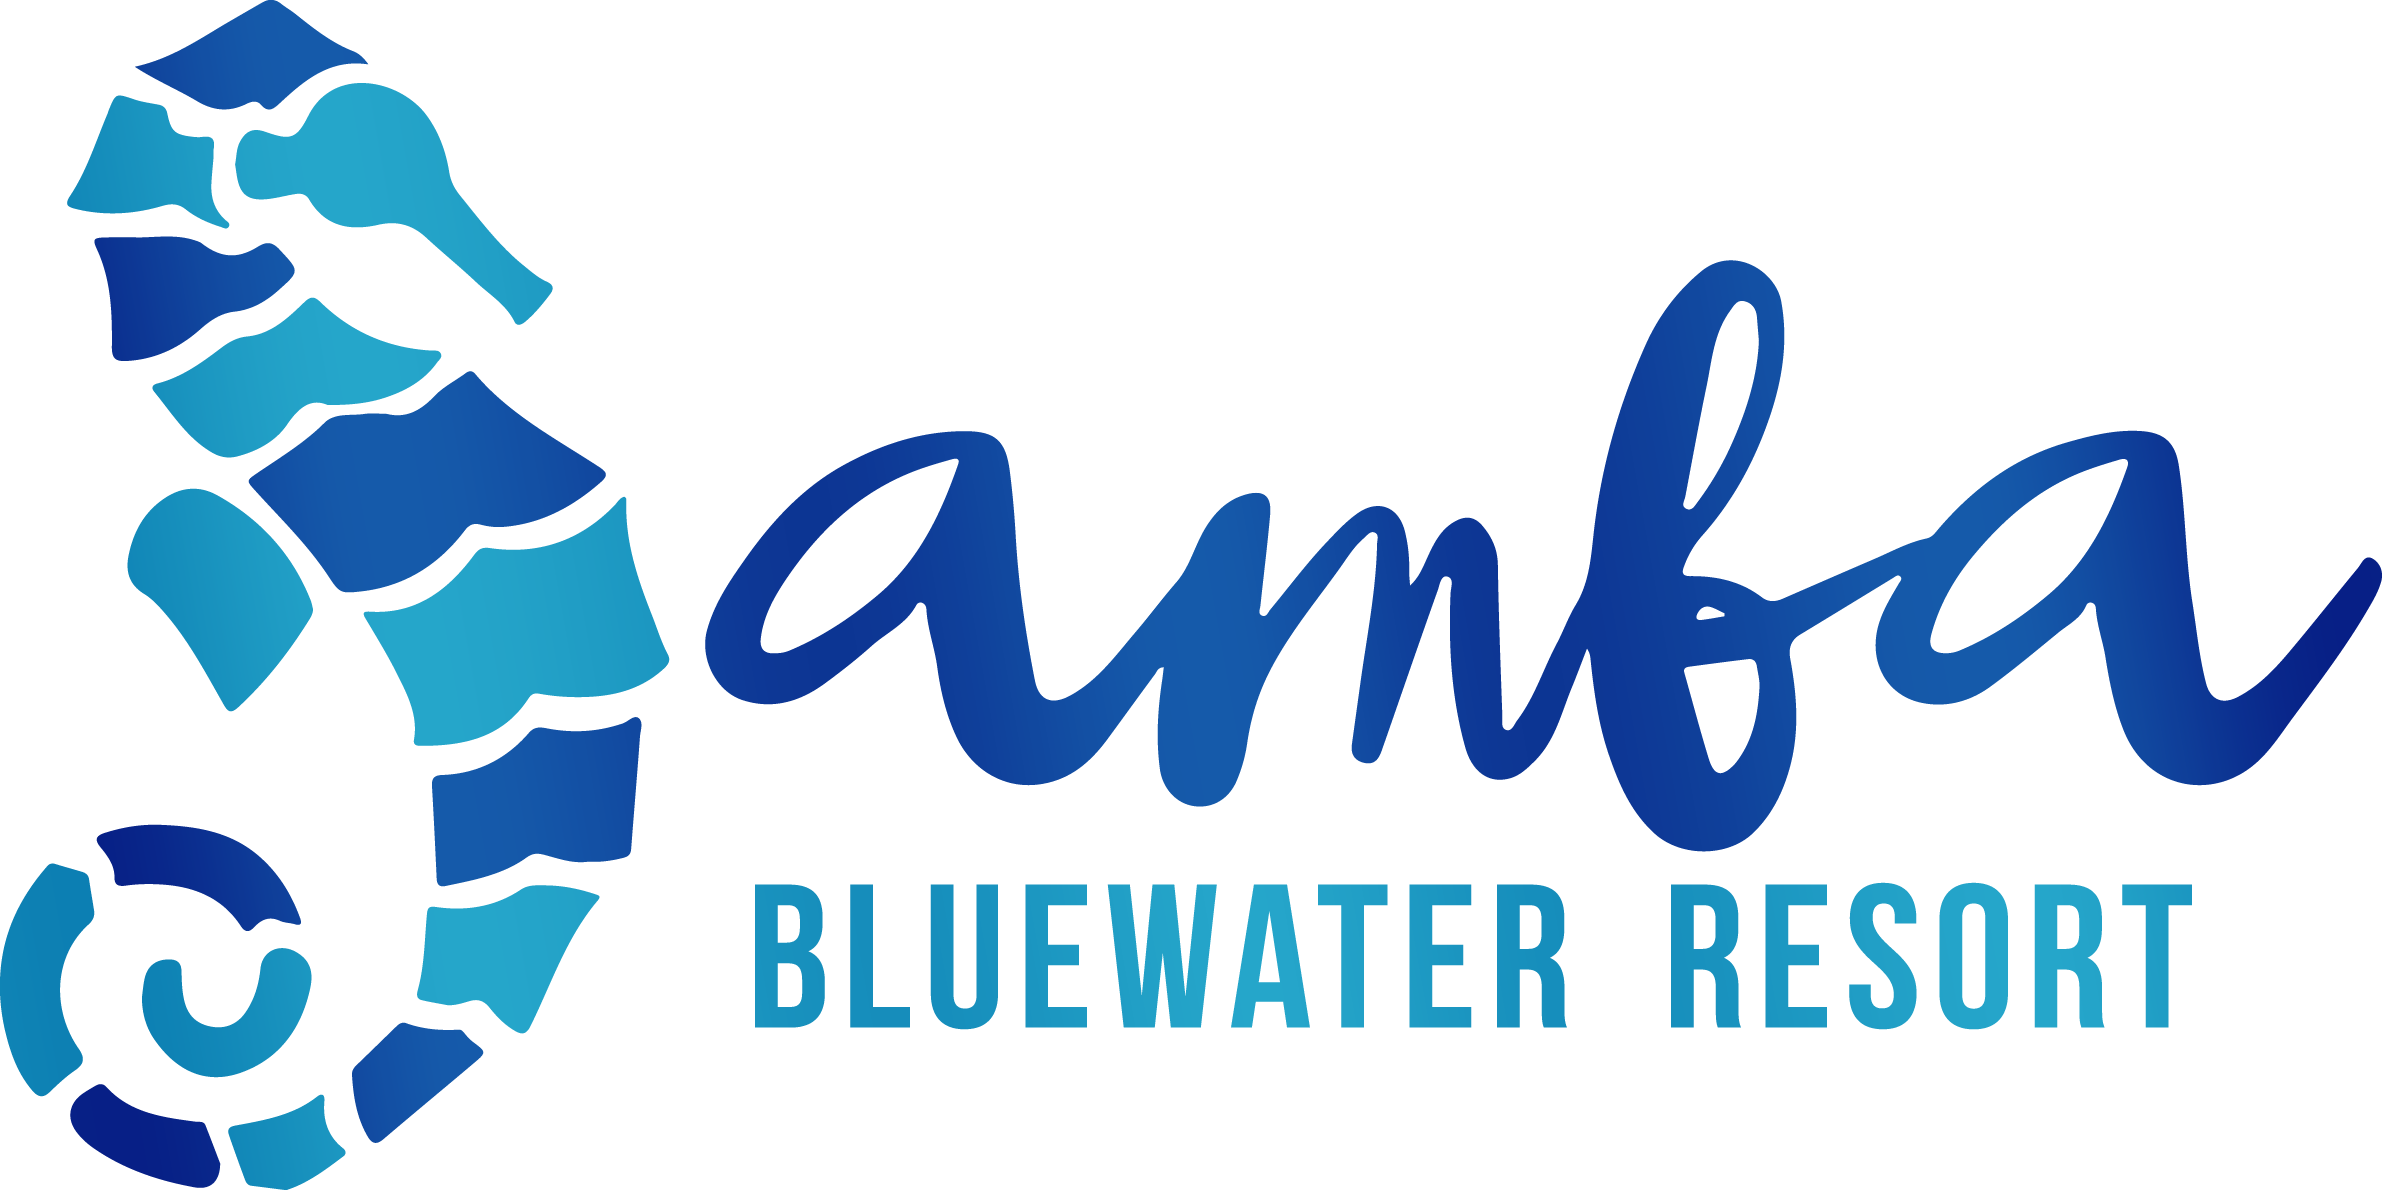 Samba Bluewater Resort